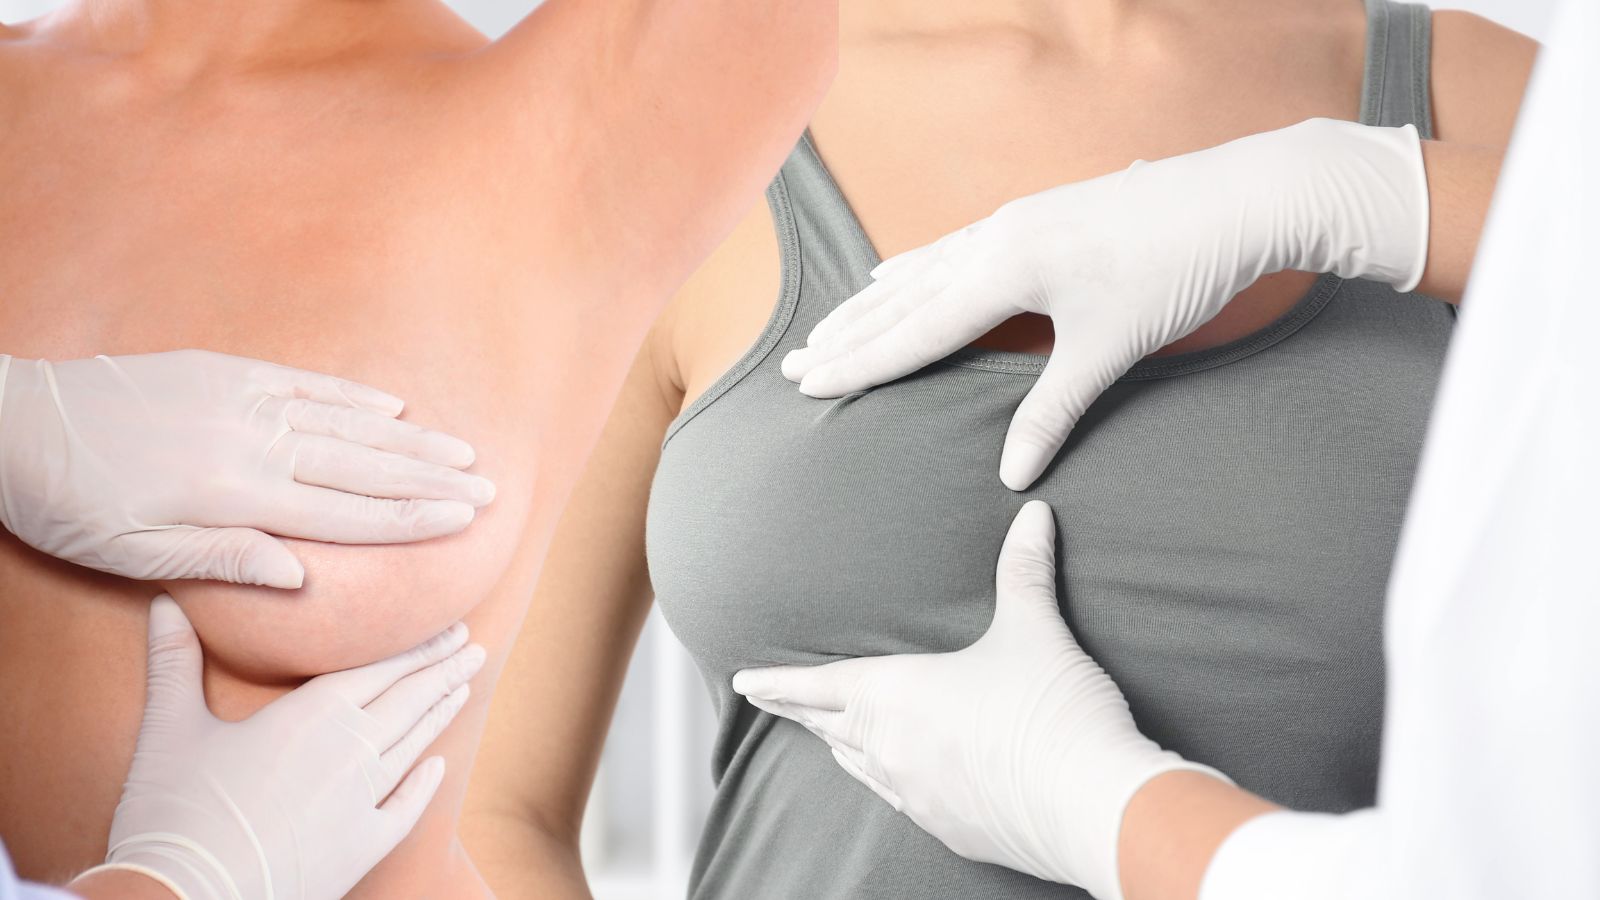 Vyšetrenie prsníkov u lekára - koláž dvoch obrázkov pri vyšetrení druhou osobou